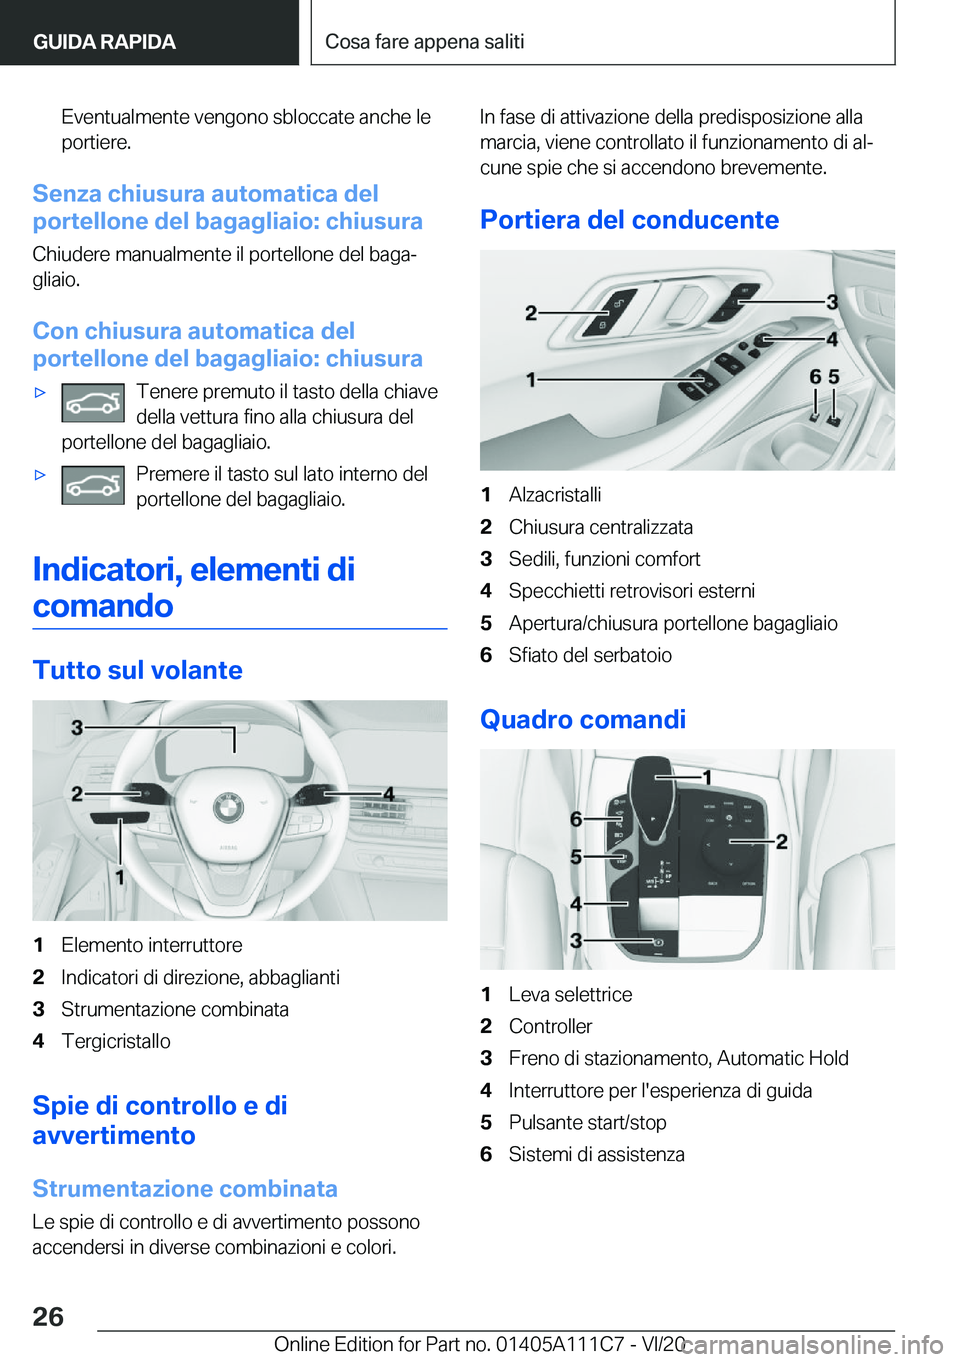 BMW 3 SERIES SEDAN PLUG-IN HYBRID 2021  Libretti Di Uso E manutenzione (in Italian) �E�v�e�n�t�u�a�l�m�e�n�t�e��v�e�n�g�o�n�o��s�b�l�o�c�c�a�t�e��a�n�c�h�e��l�e
�p�o�r�t�i�e�r�e�.
�S�e�n�z�a��c�h�i�u�s�u�r�a��a�u�t�o�m�a�t�i�c�a��d�e�l
�p�o�r�t�e�l�l�o�n�e��d�e�l��b�a�g�a�g�